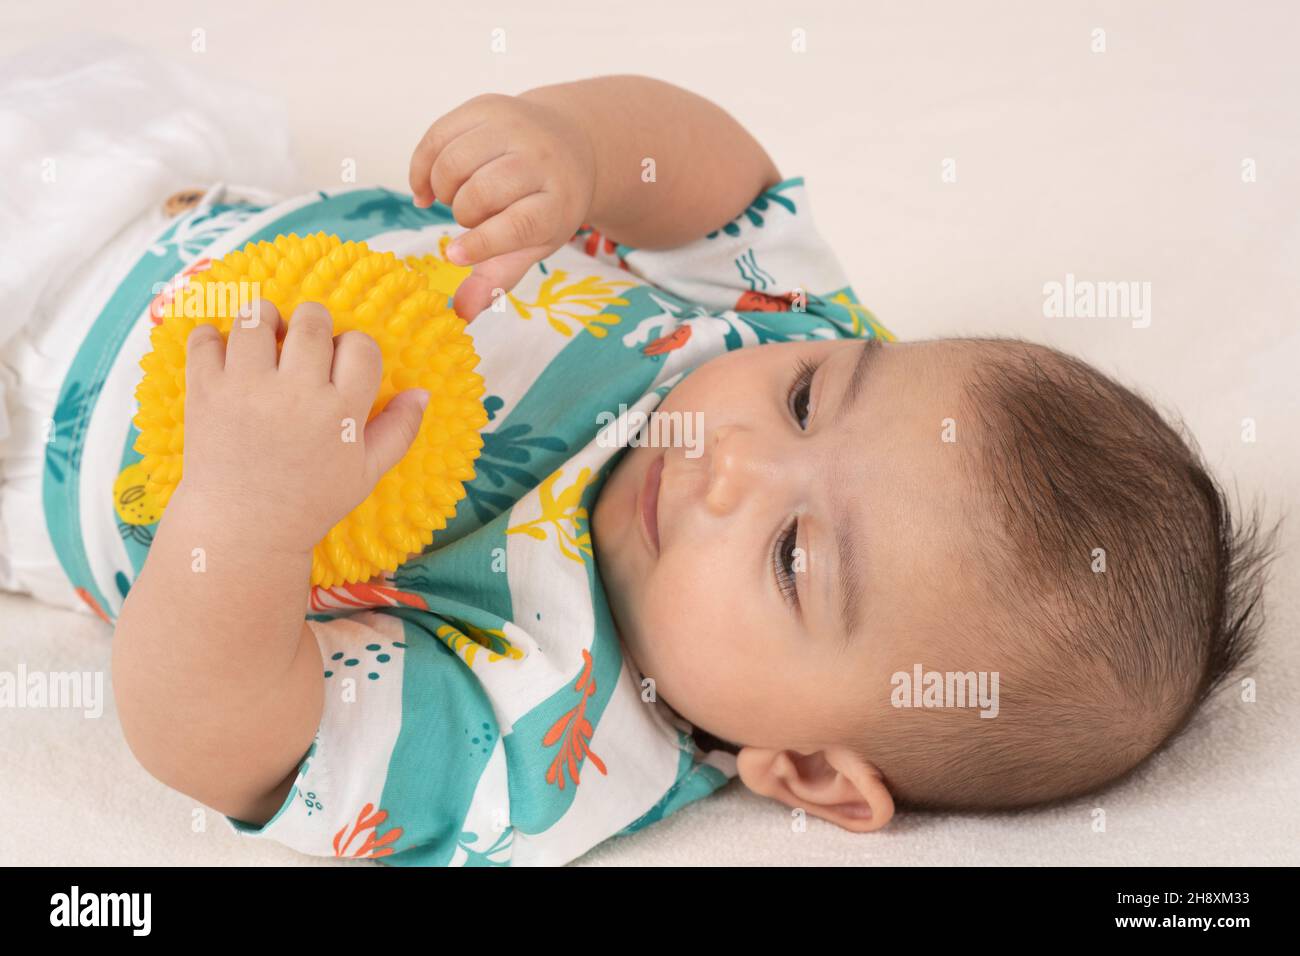 3 Monate alter Junge auf dem Rücken hält Plastikspielzeugkugel mit einer Hand und fühlt Textur von Noppen mit der anderen Hand, mit Fingern Stockfoto